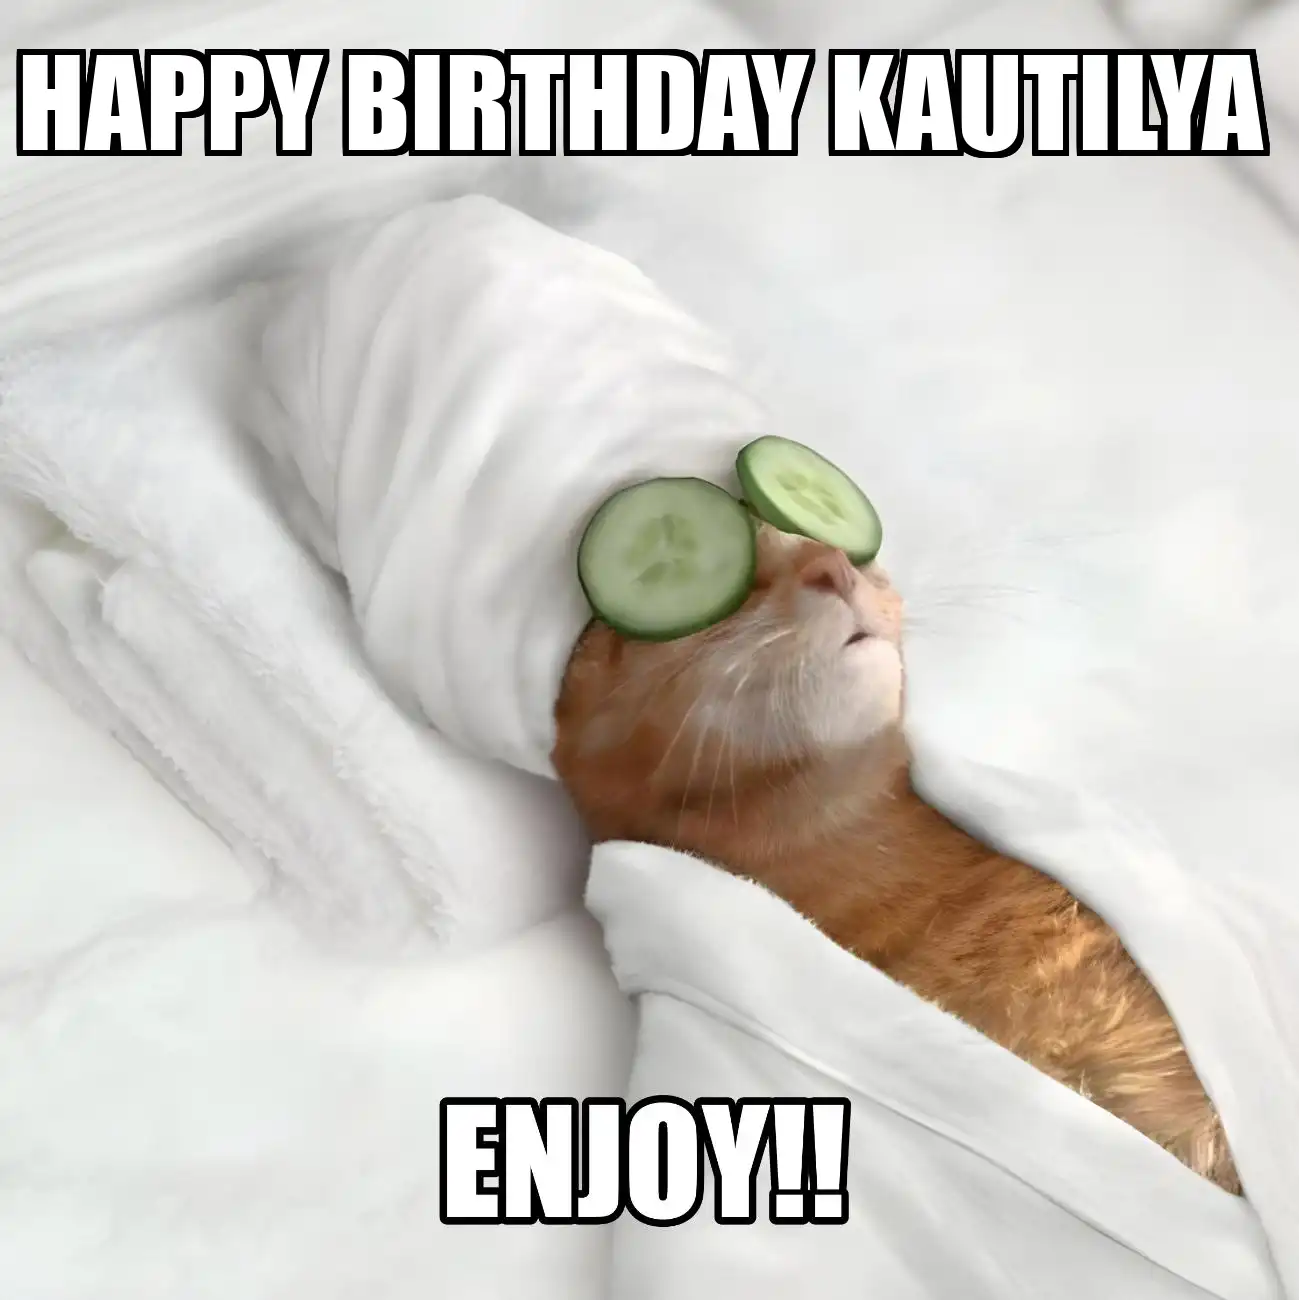 Happy Birthday Kautilya Enjoy Cat Meme